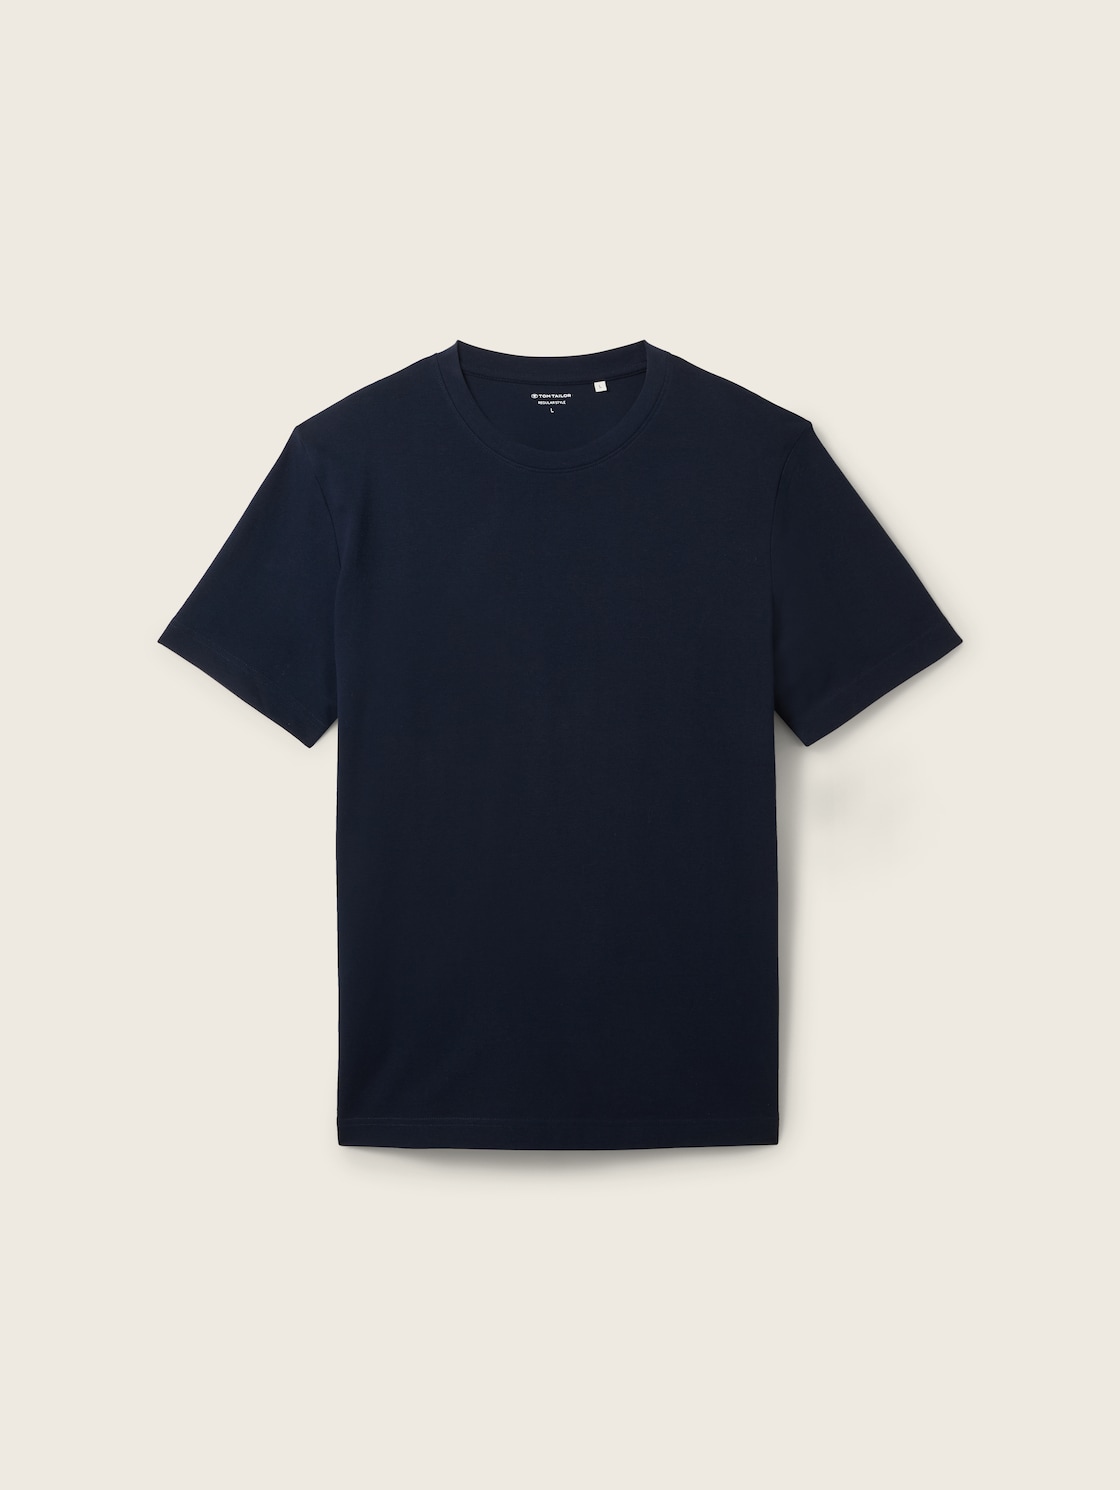 TOM TAILOR Herren T-Shirt mit Piqué Struktur, blau, Uni, Gr. M von Tom Tailor